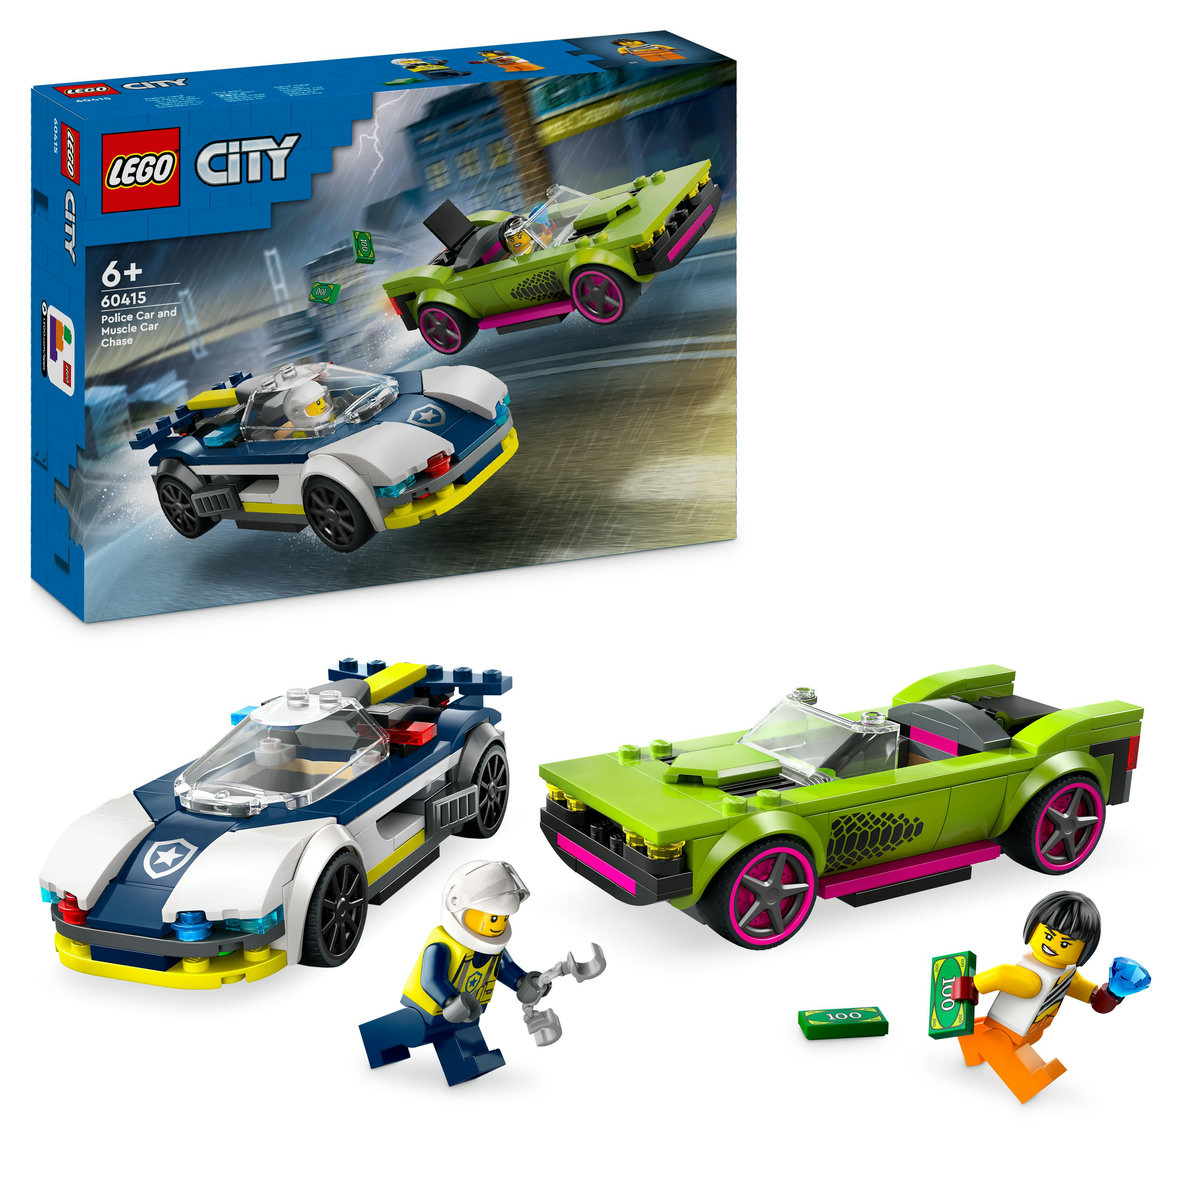 LEGO City - Urmarire cu masina de politie si masina puternica 60415, 213 piese